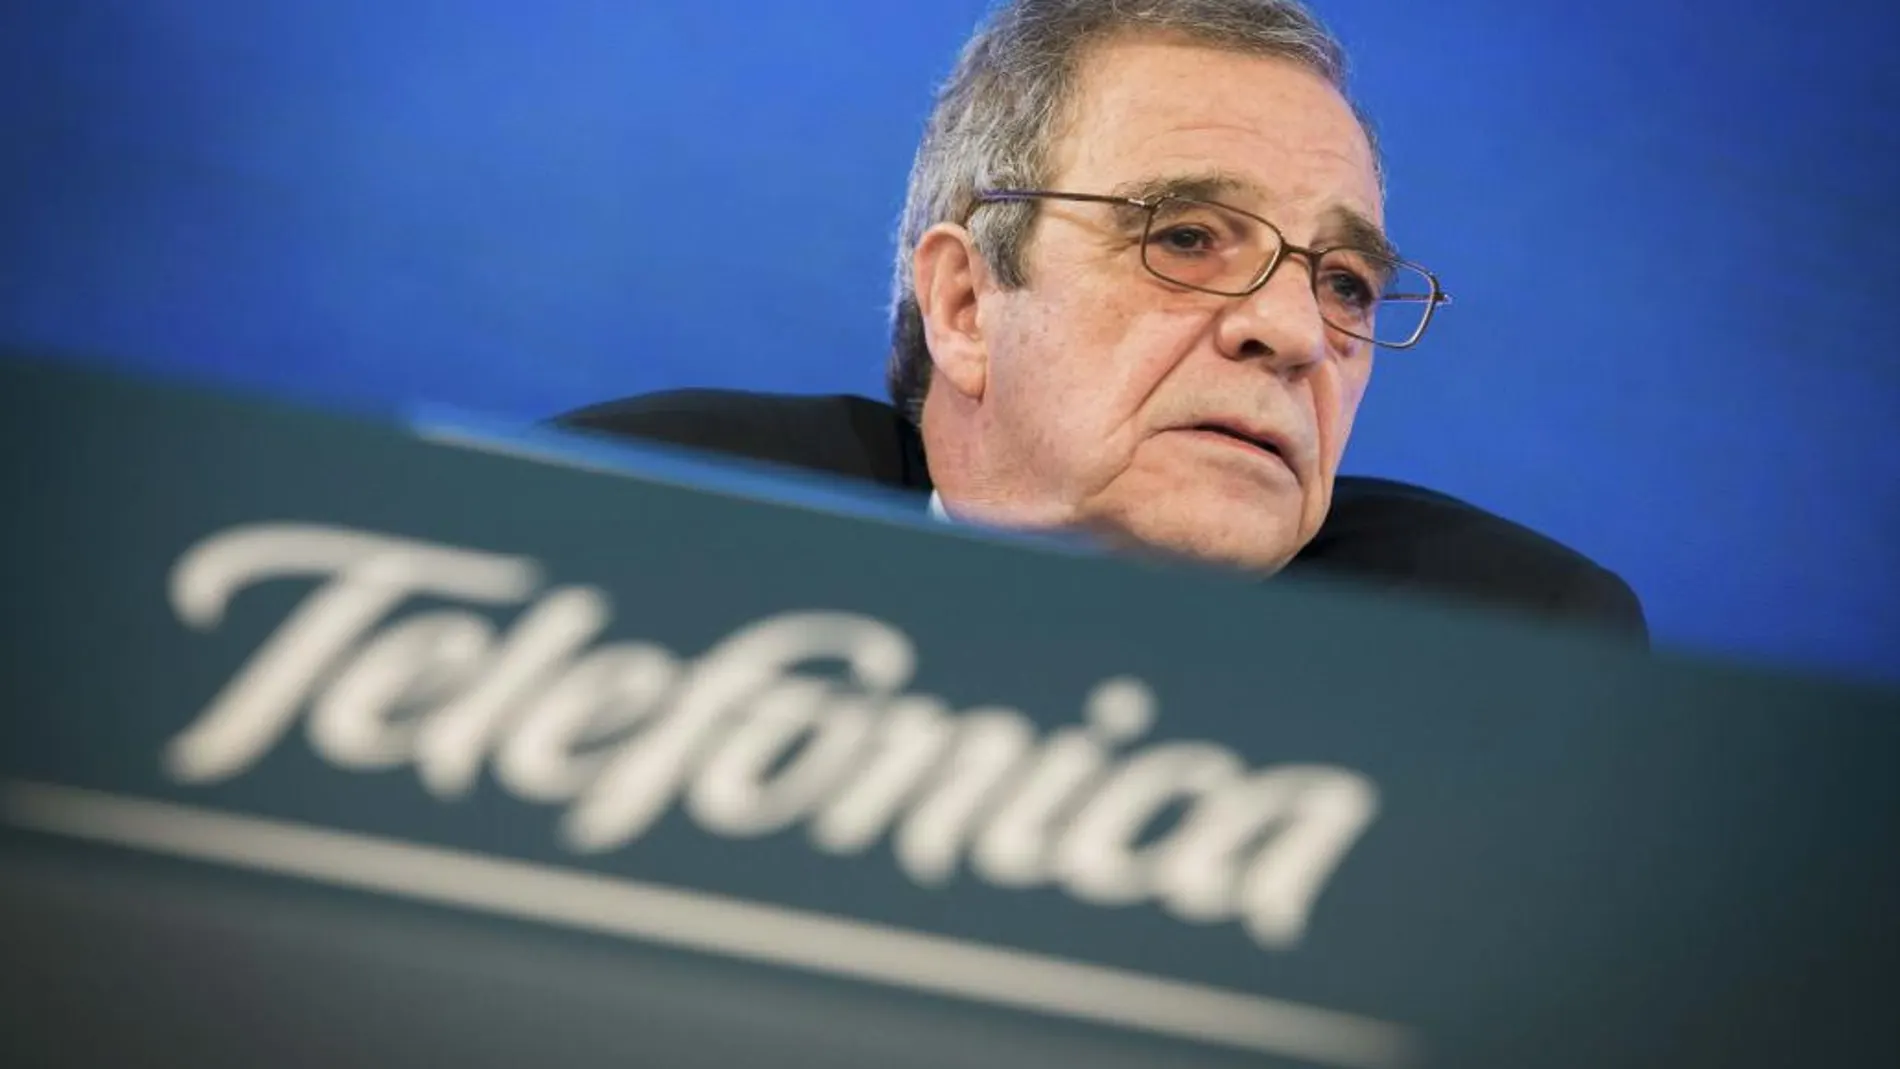 El presidente de Telefónica, César Alierta, durante la rueda de prensa para presentar los resultados de la compañía.